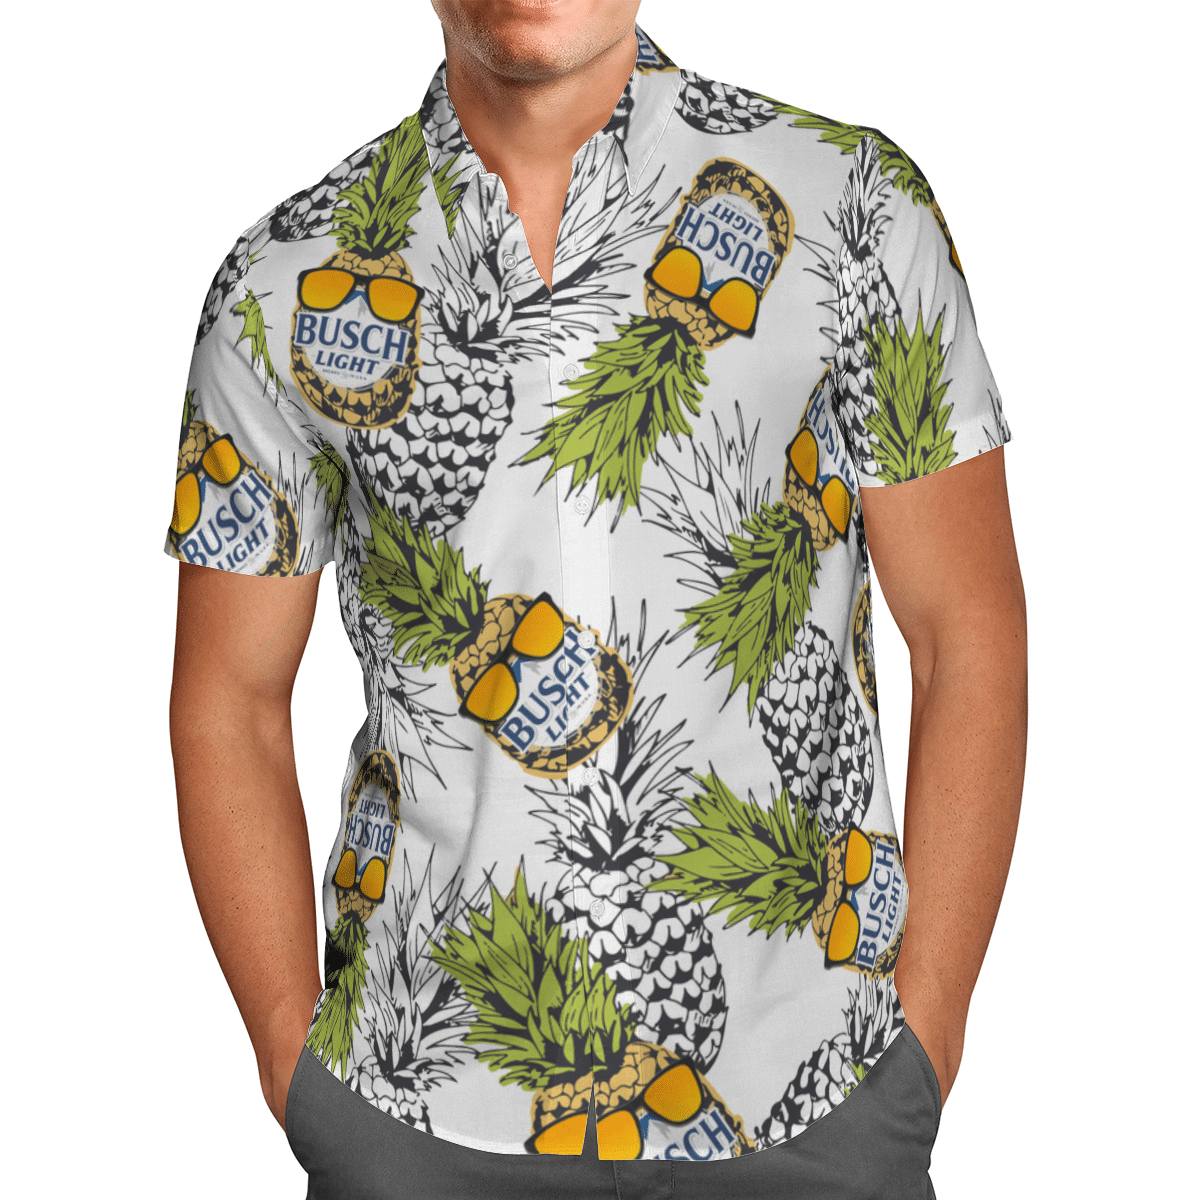 Busch light Hawaiian shirt and short 1